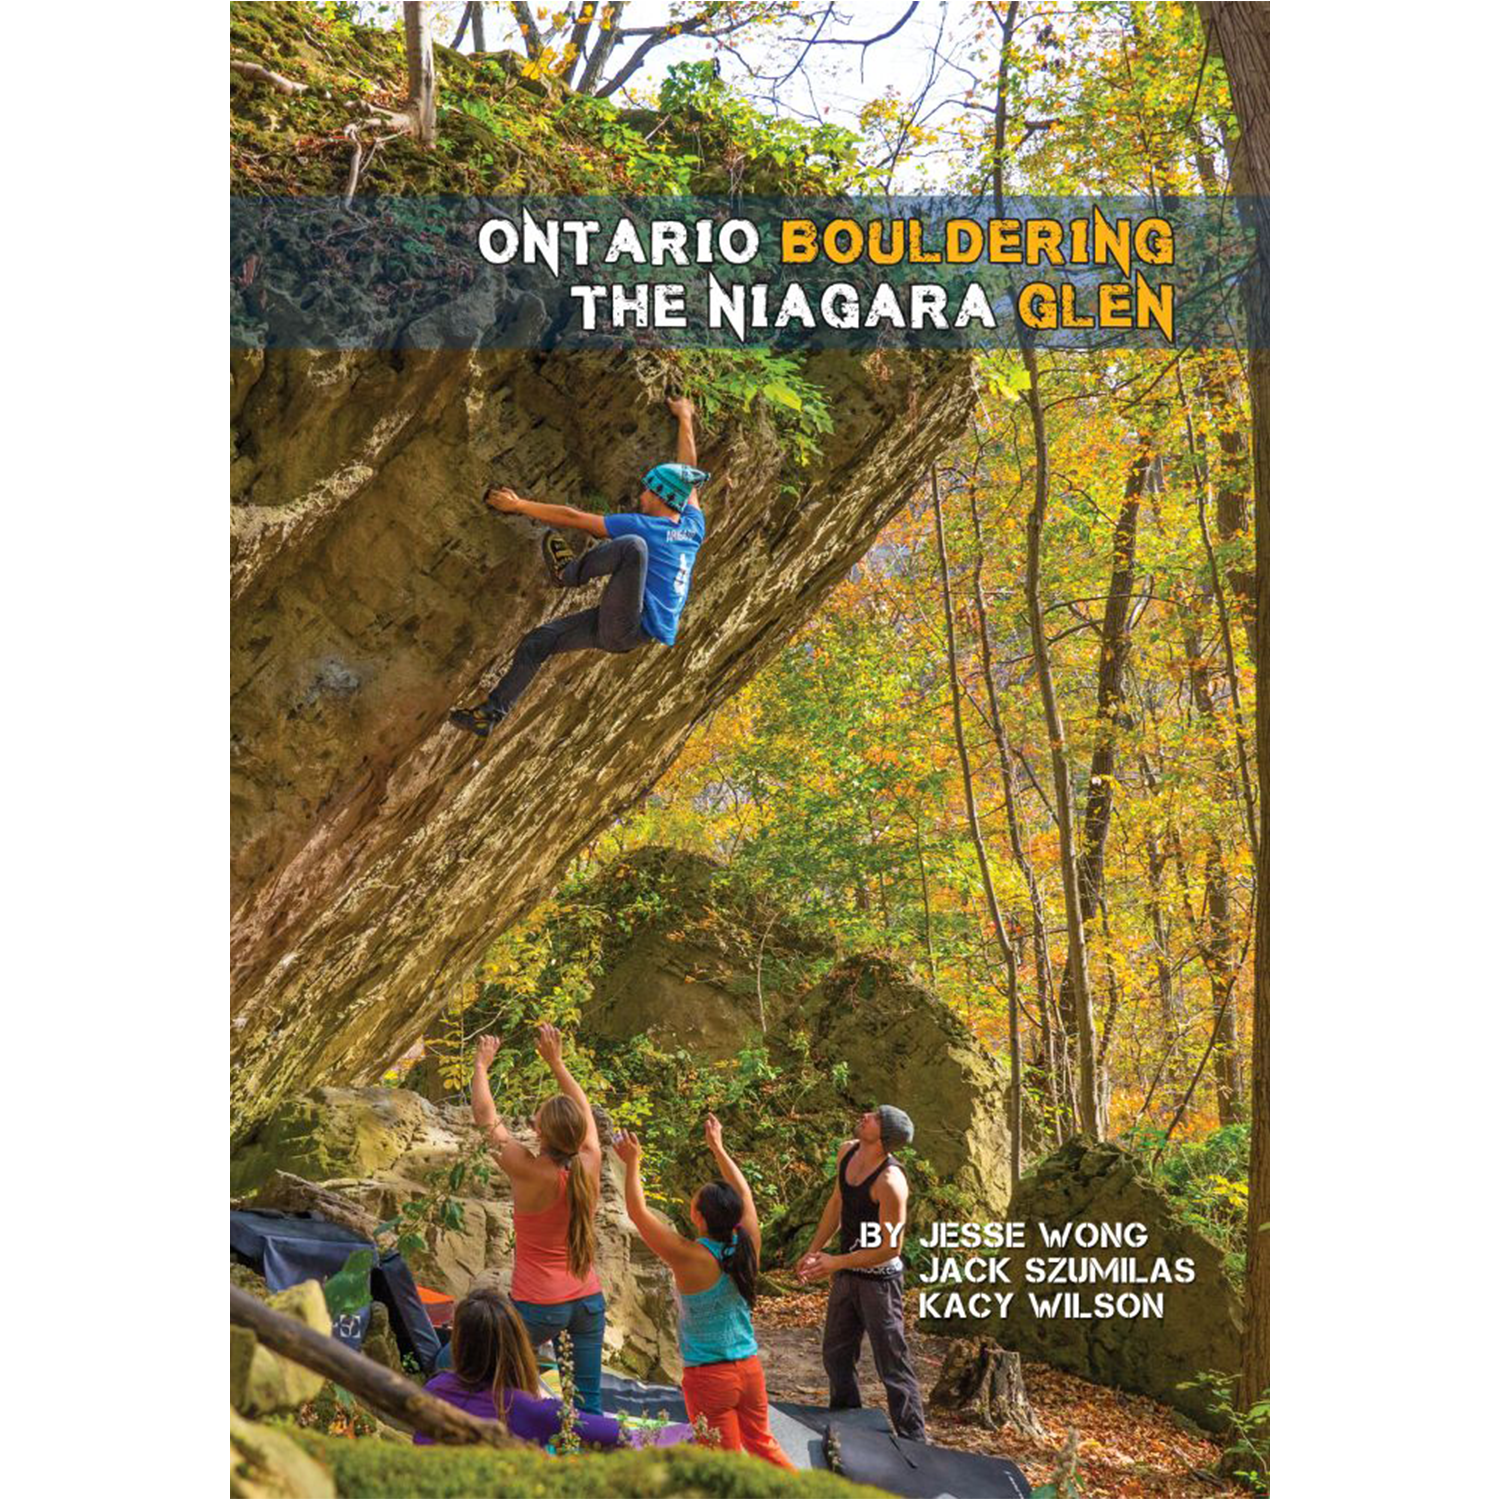 Ontario Bouldering : The Niagara Glen